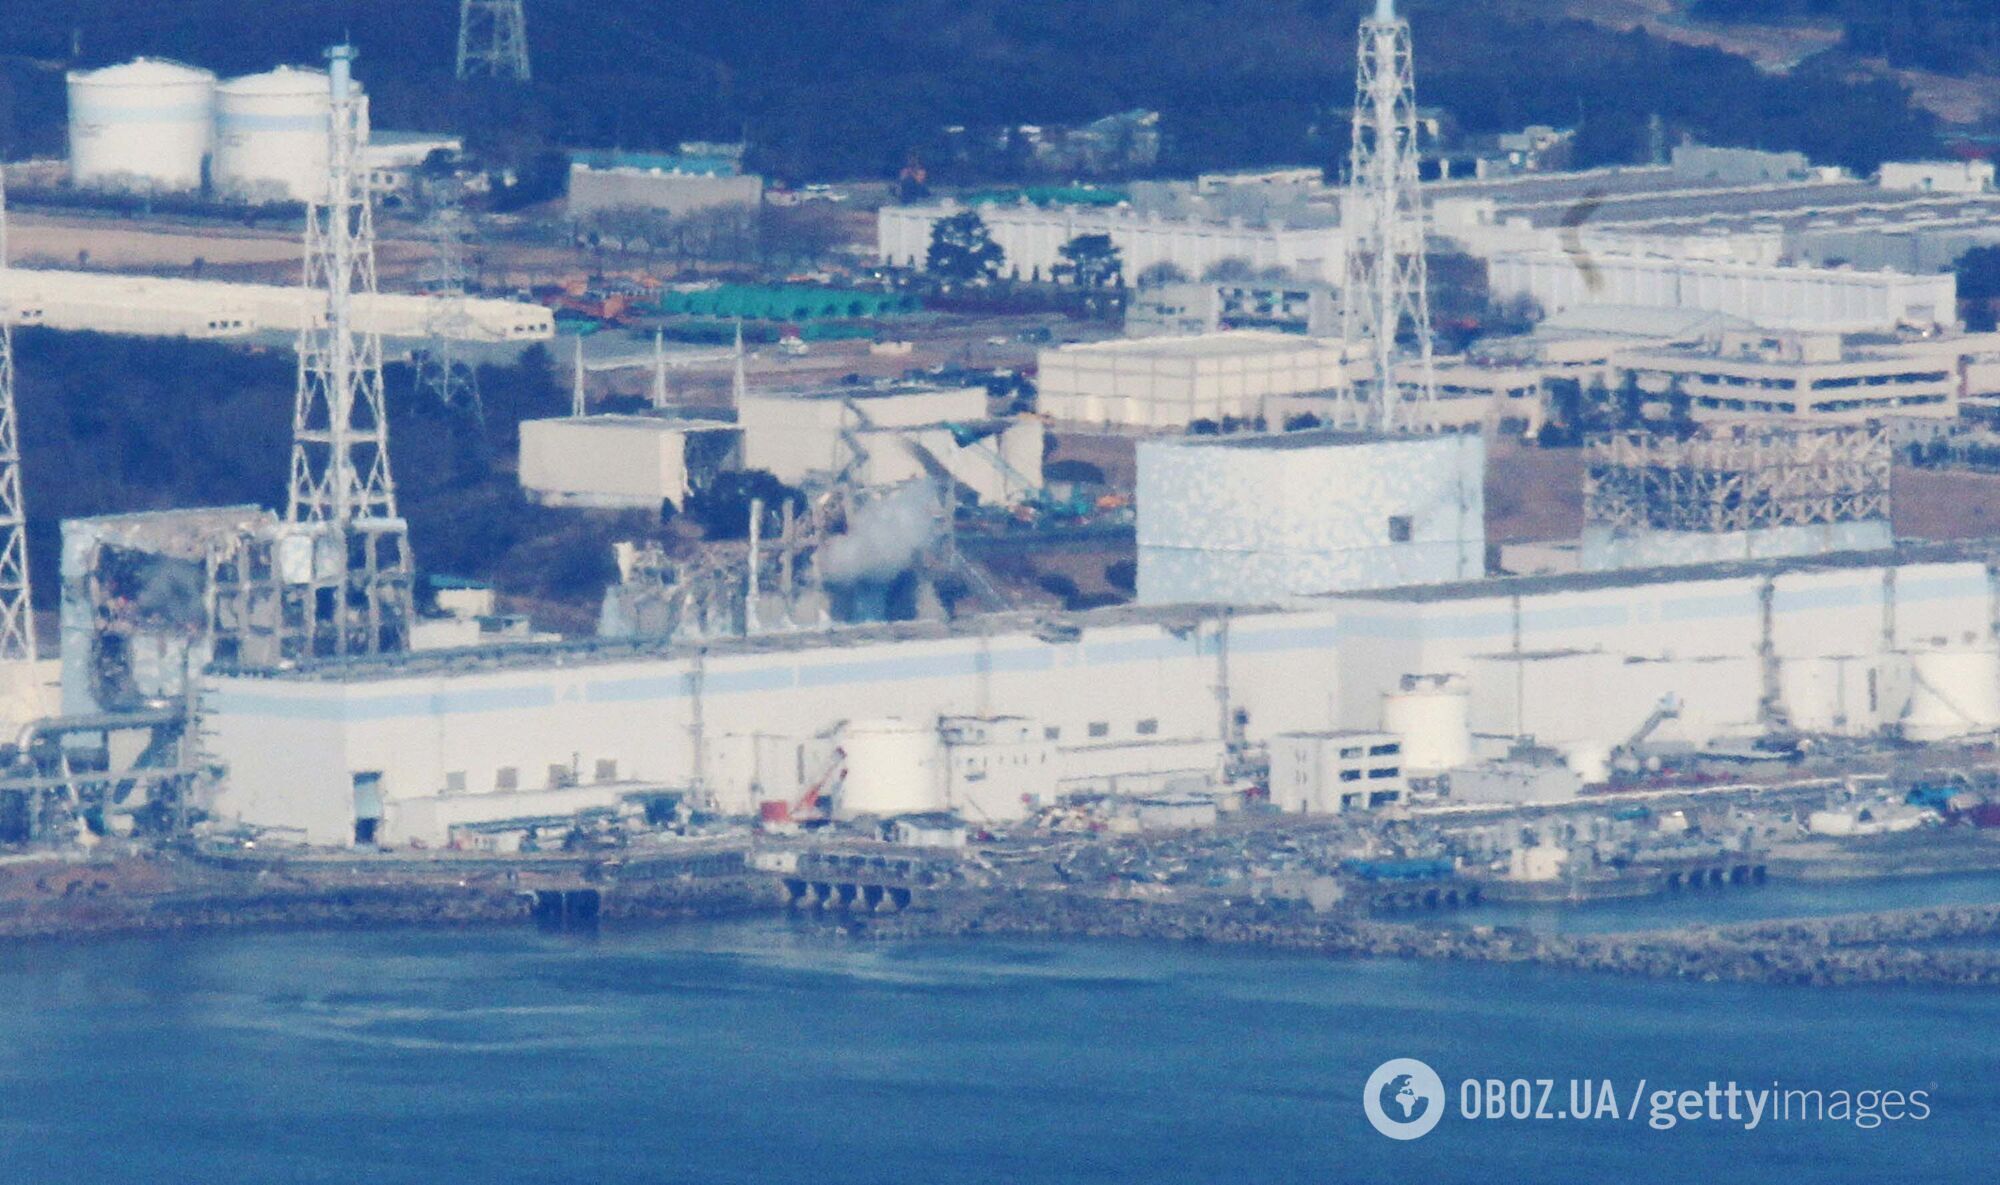 АЕС "Фукусіма" 17 березня 2011 року (знімок з гелікоптера)